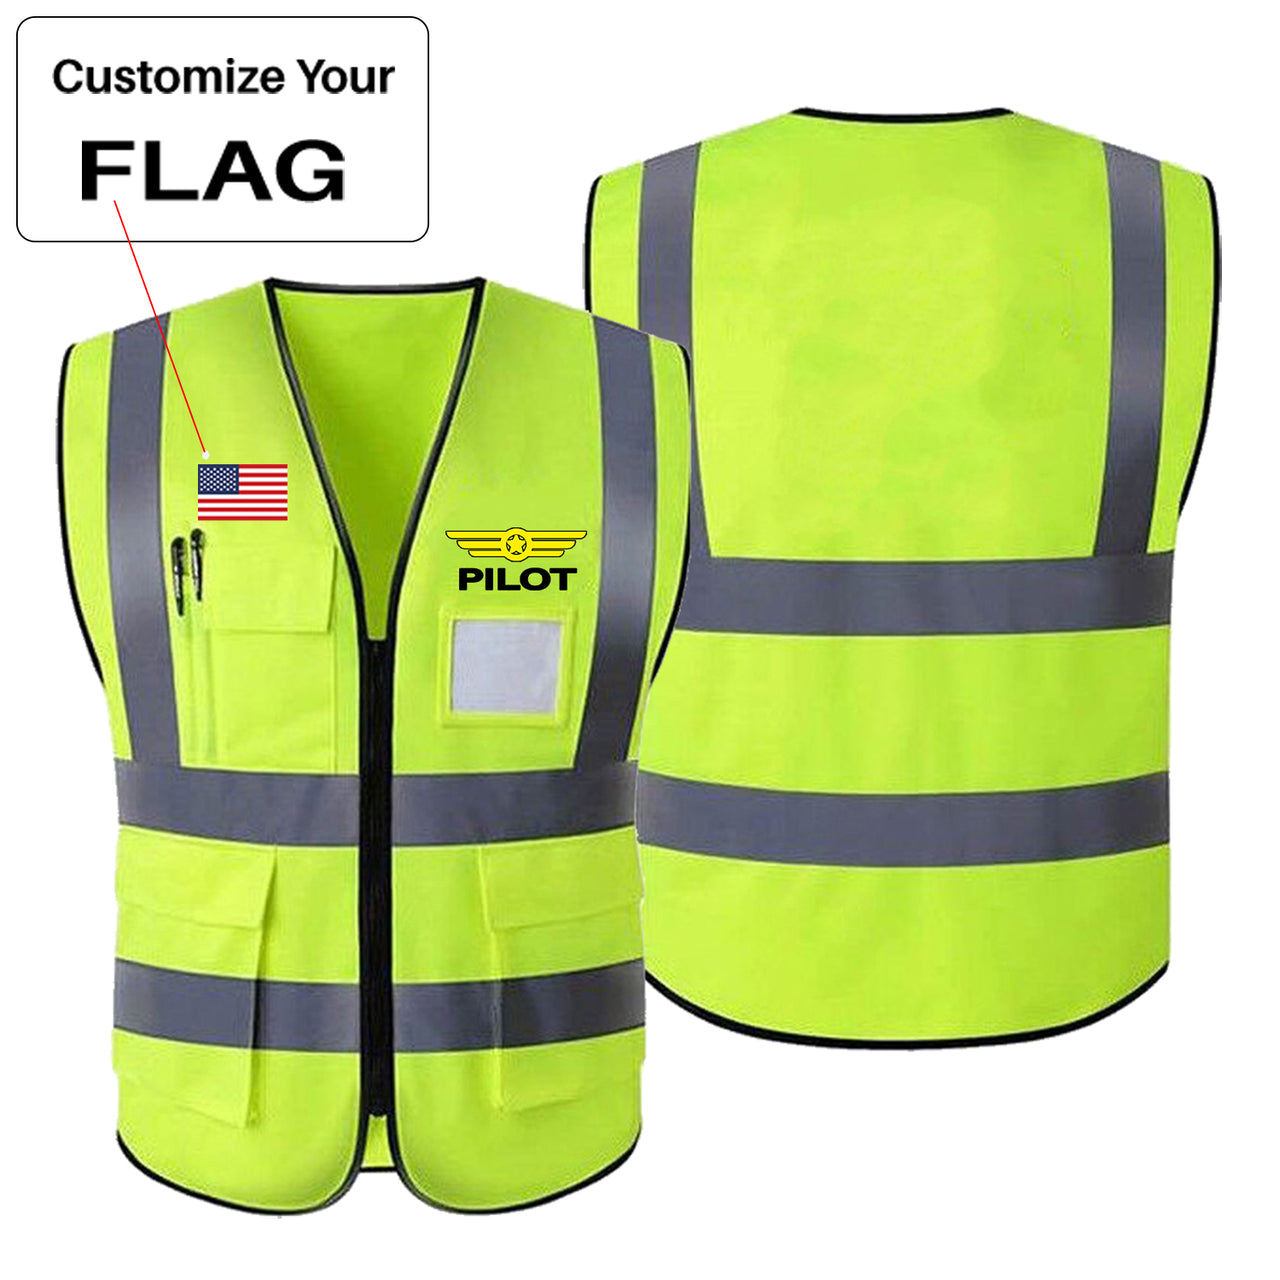 Custom Flag & Pilot Badge Designed Reflective Vests